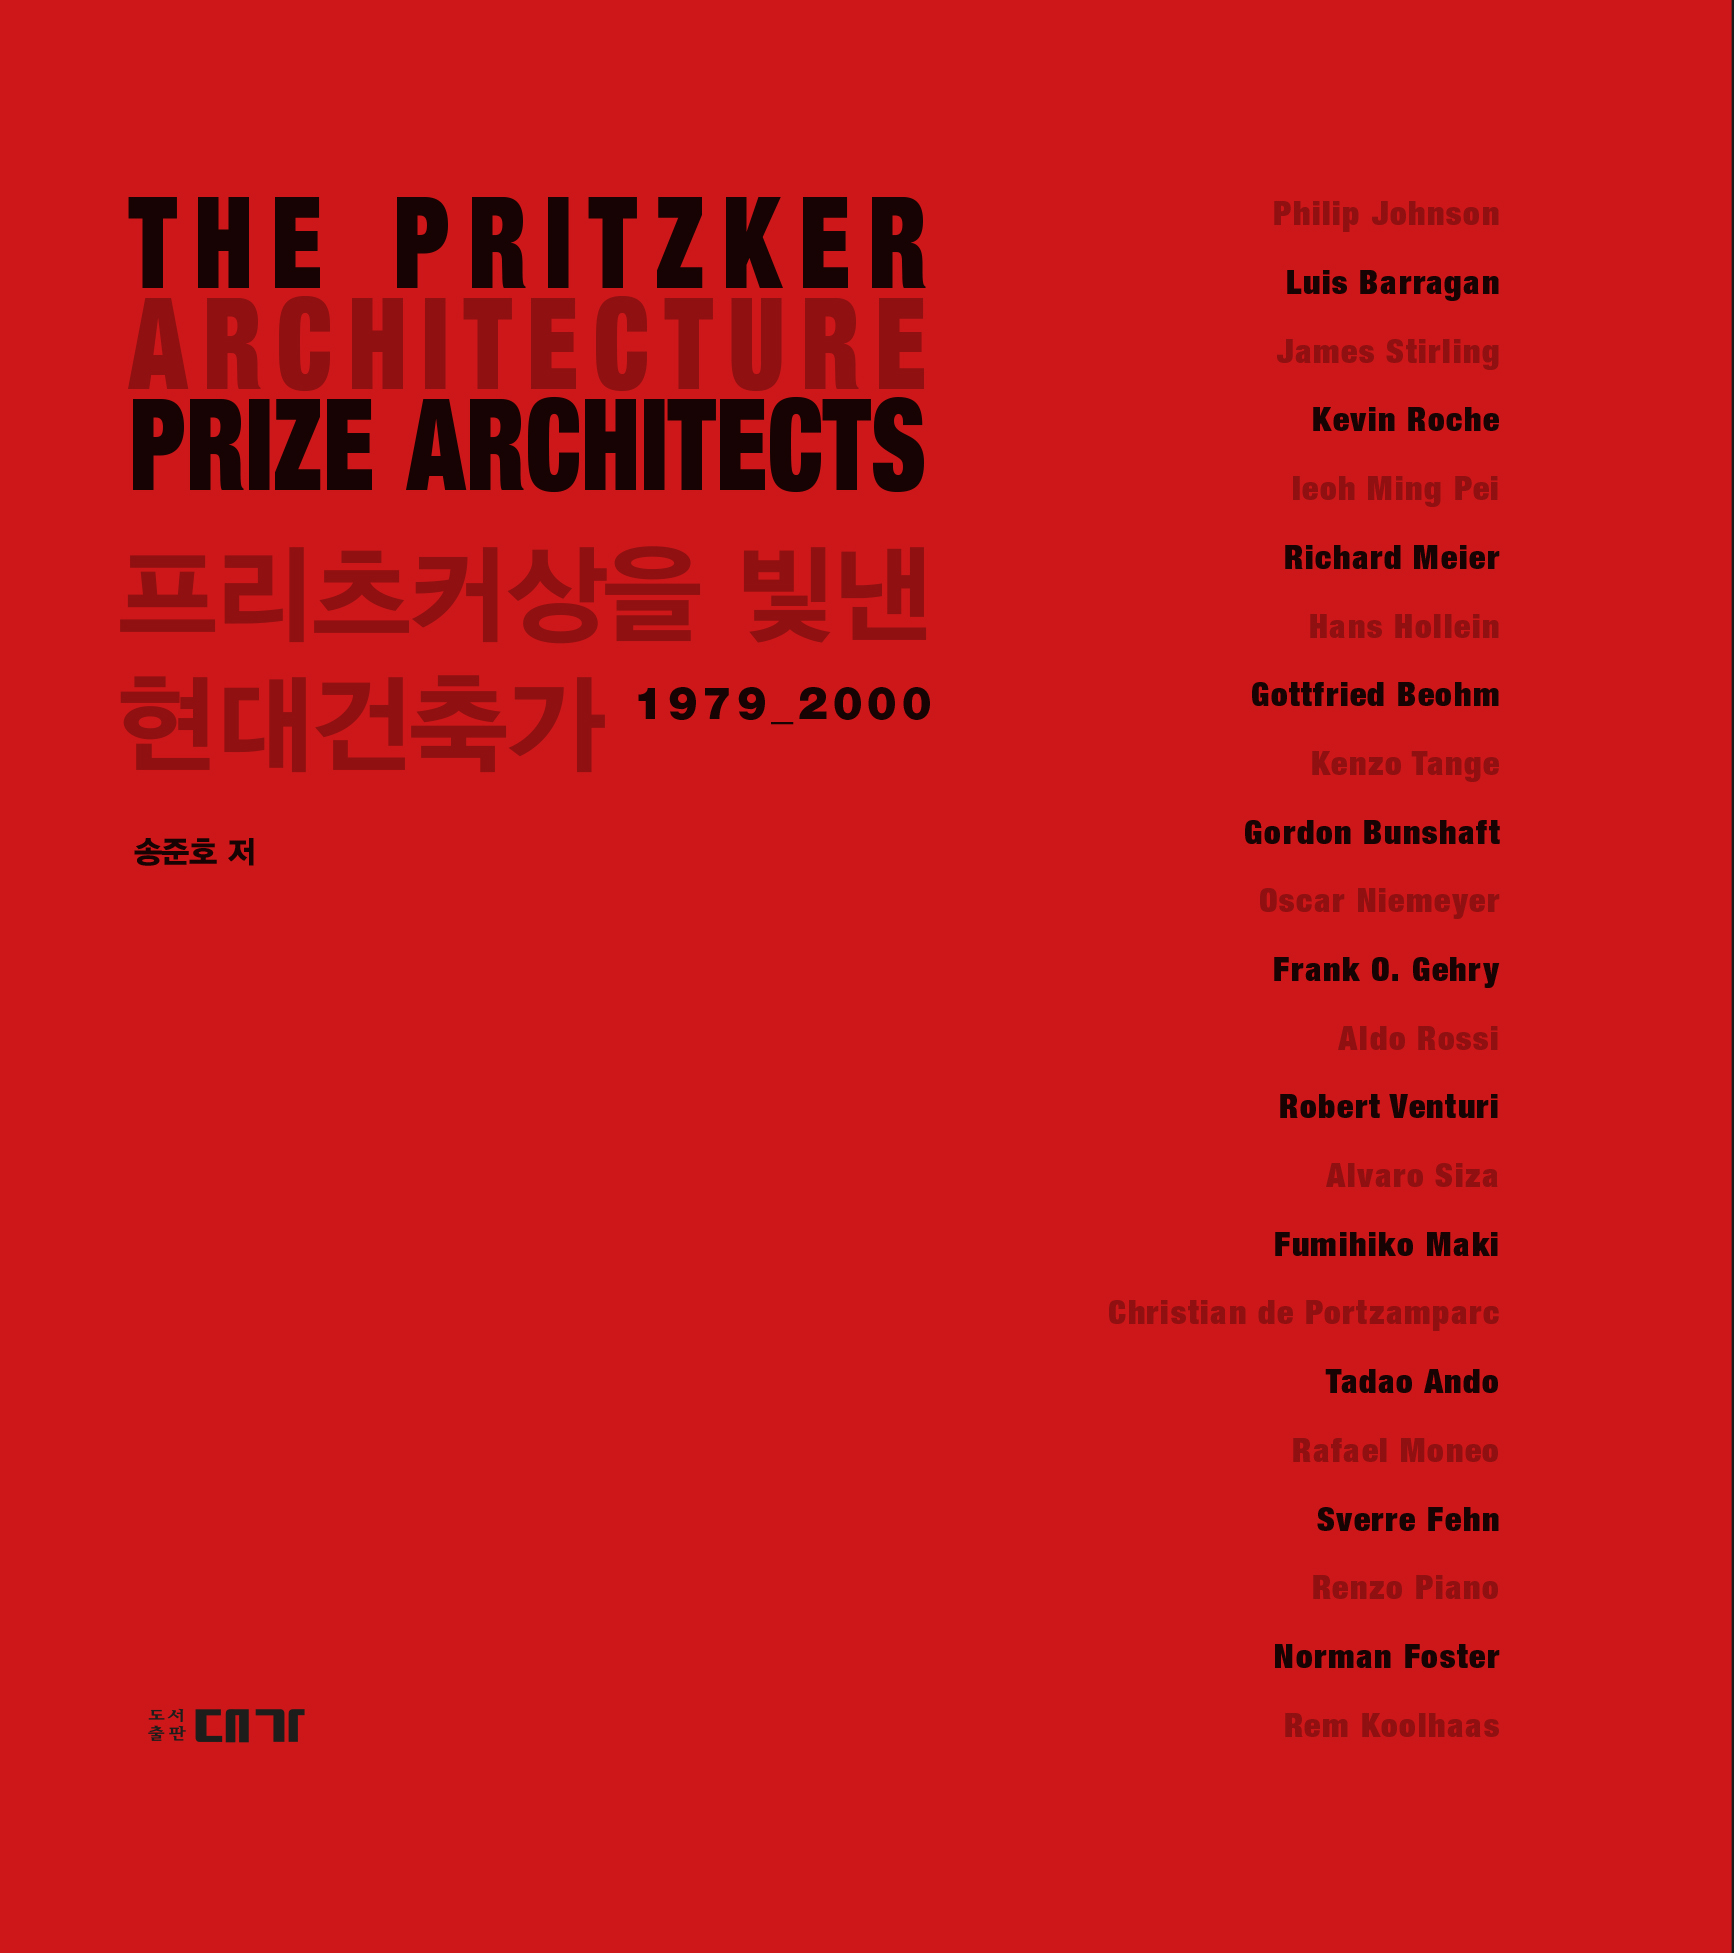 프리츠커상을 빛낸 현대건축가(1979 2000)